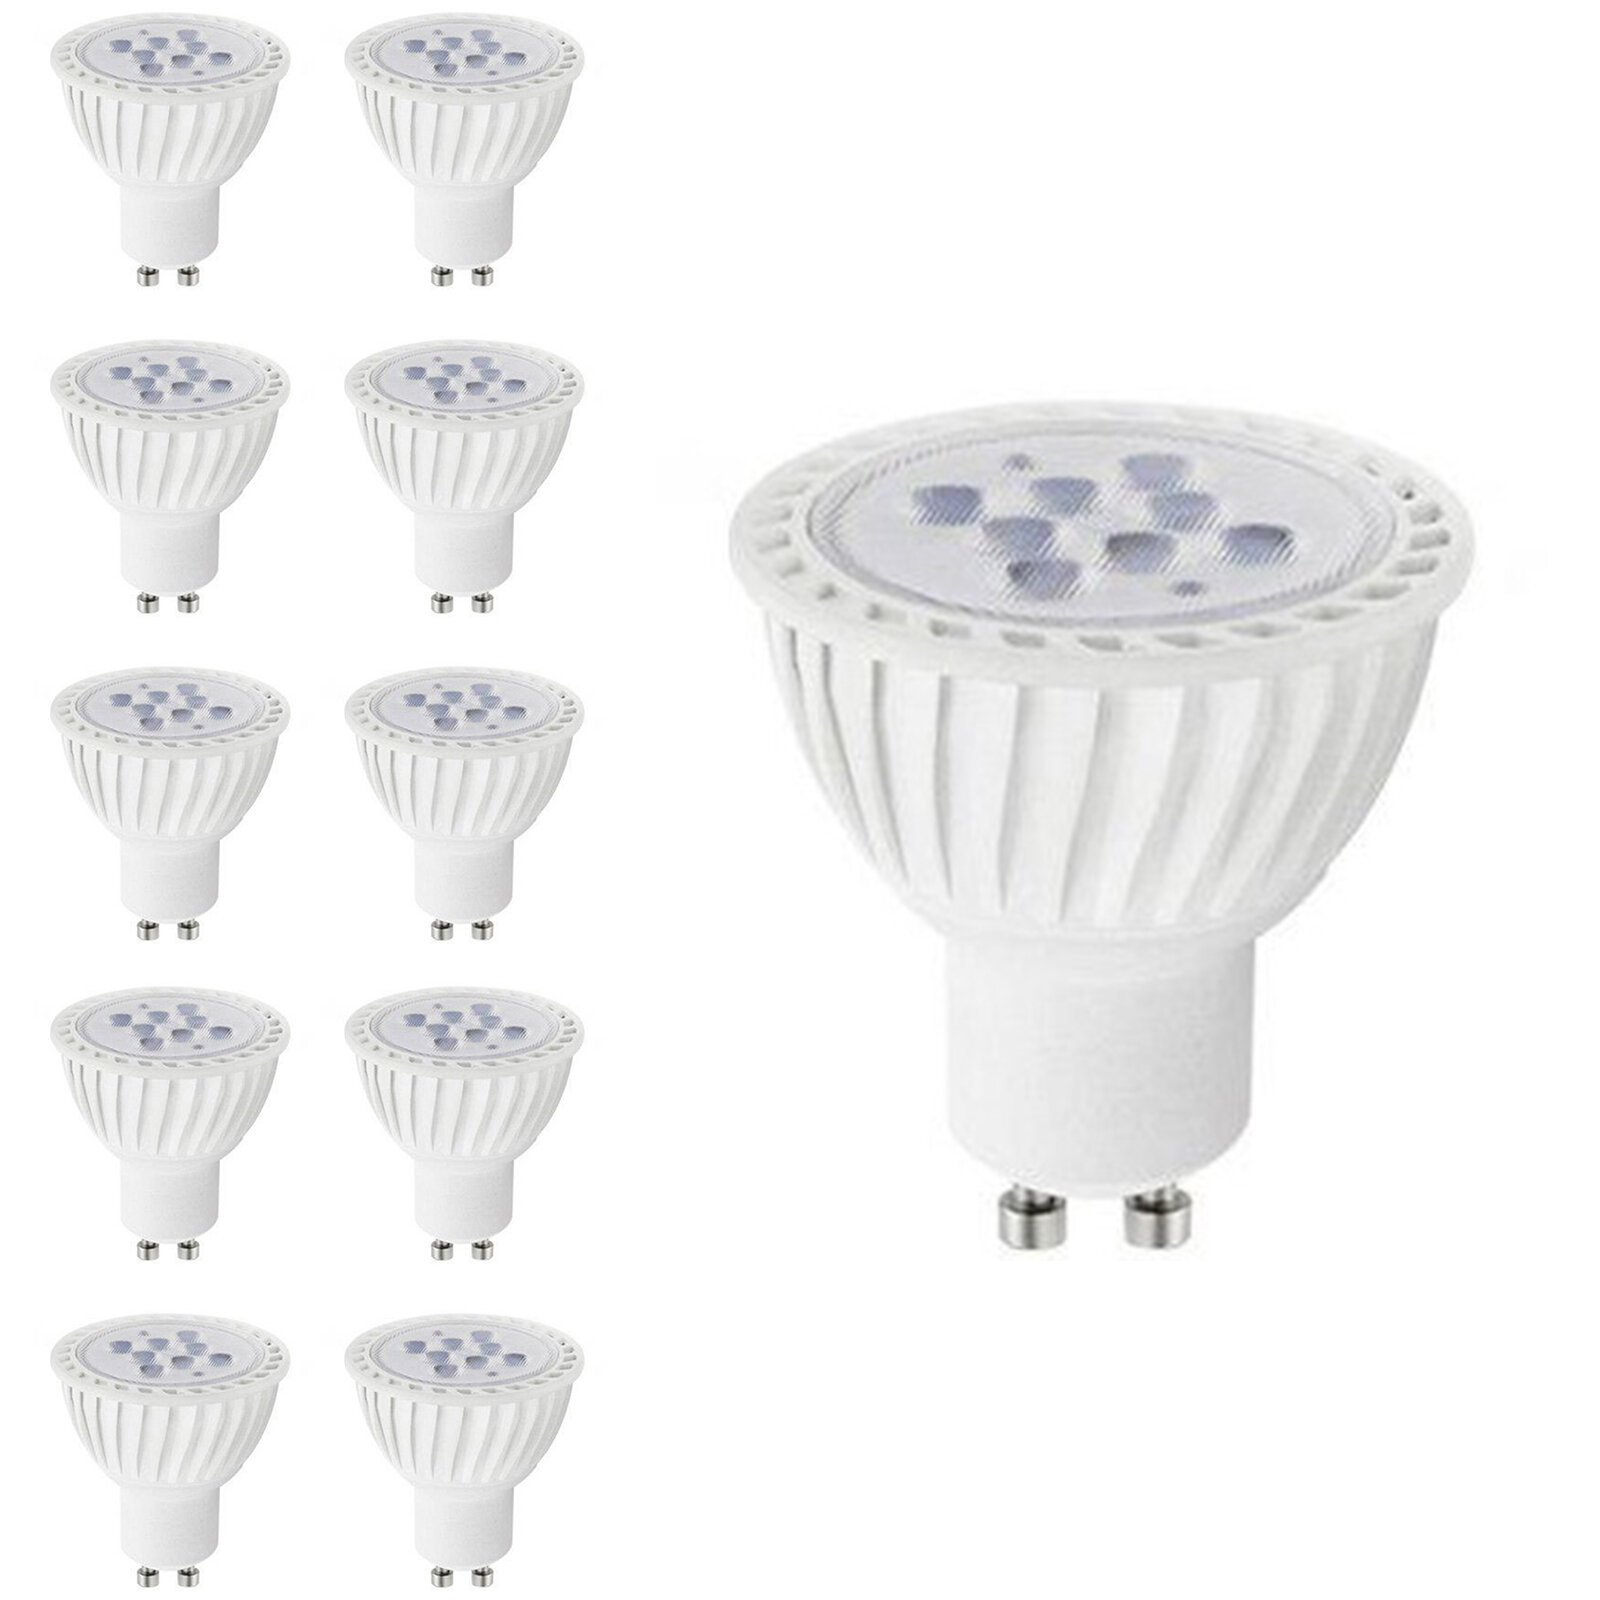 QPLUS 7 Watt (50 Watt Equivalent) MR16 LED Dimmable Light Bulb 3CCT (3000K/4000K/5000K)  GU10 Base